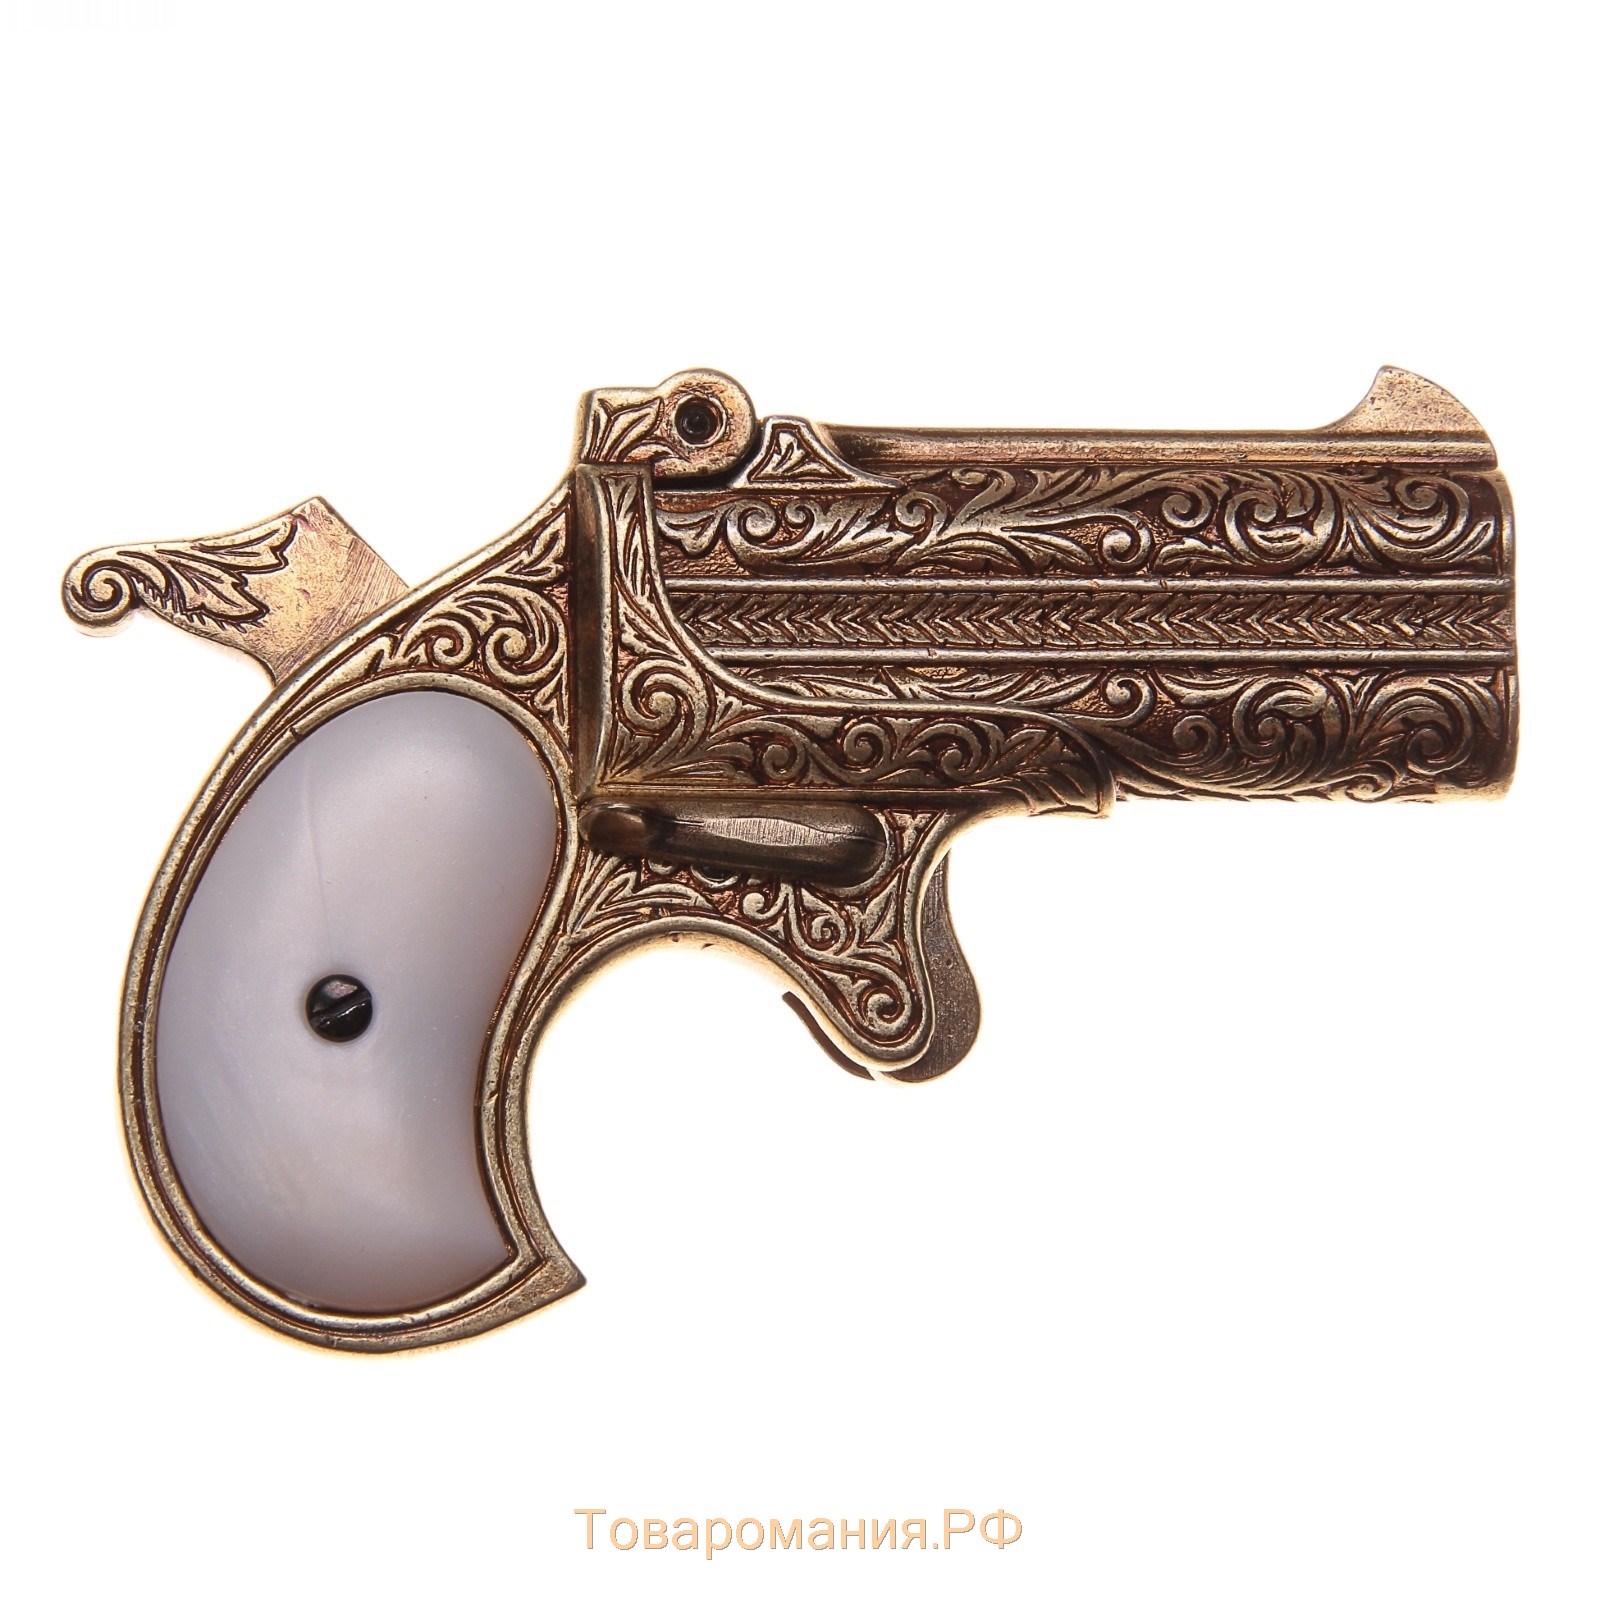 Макет пистолета Дерринджера, 41 мм, США, 1866 г